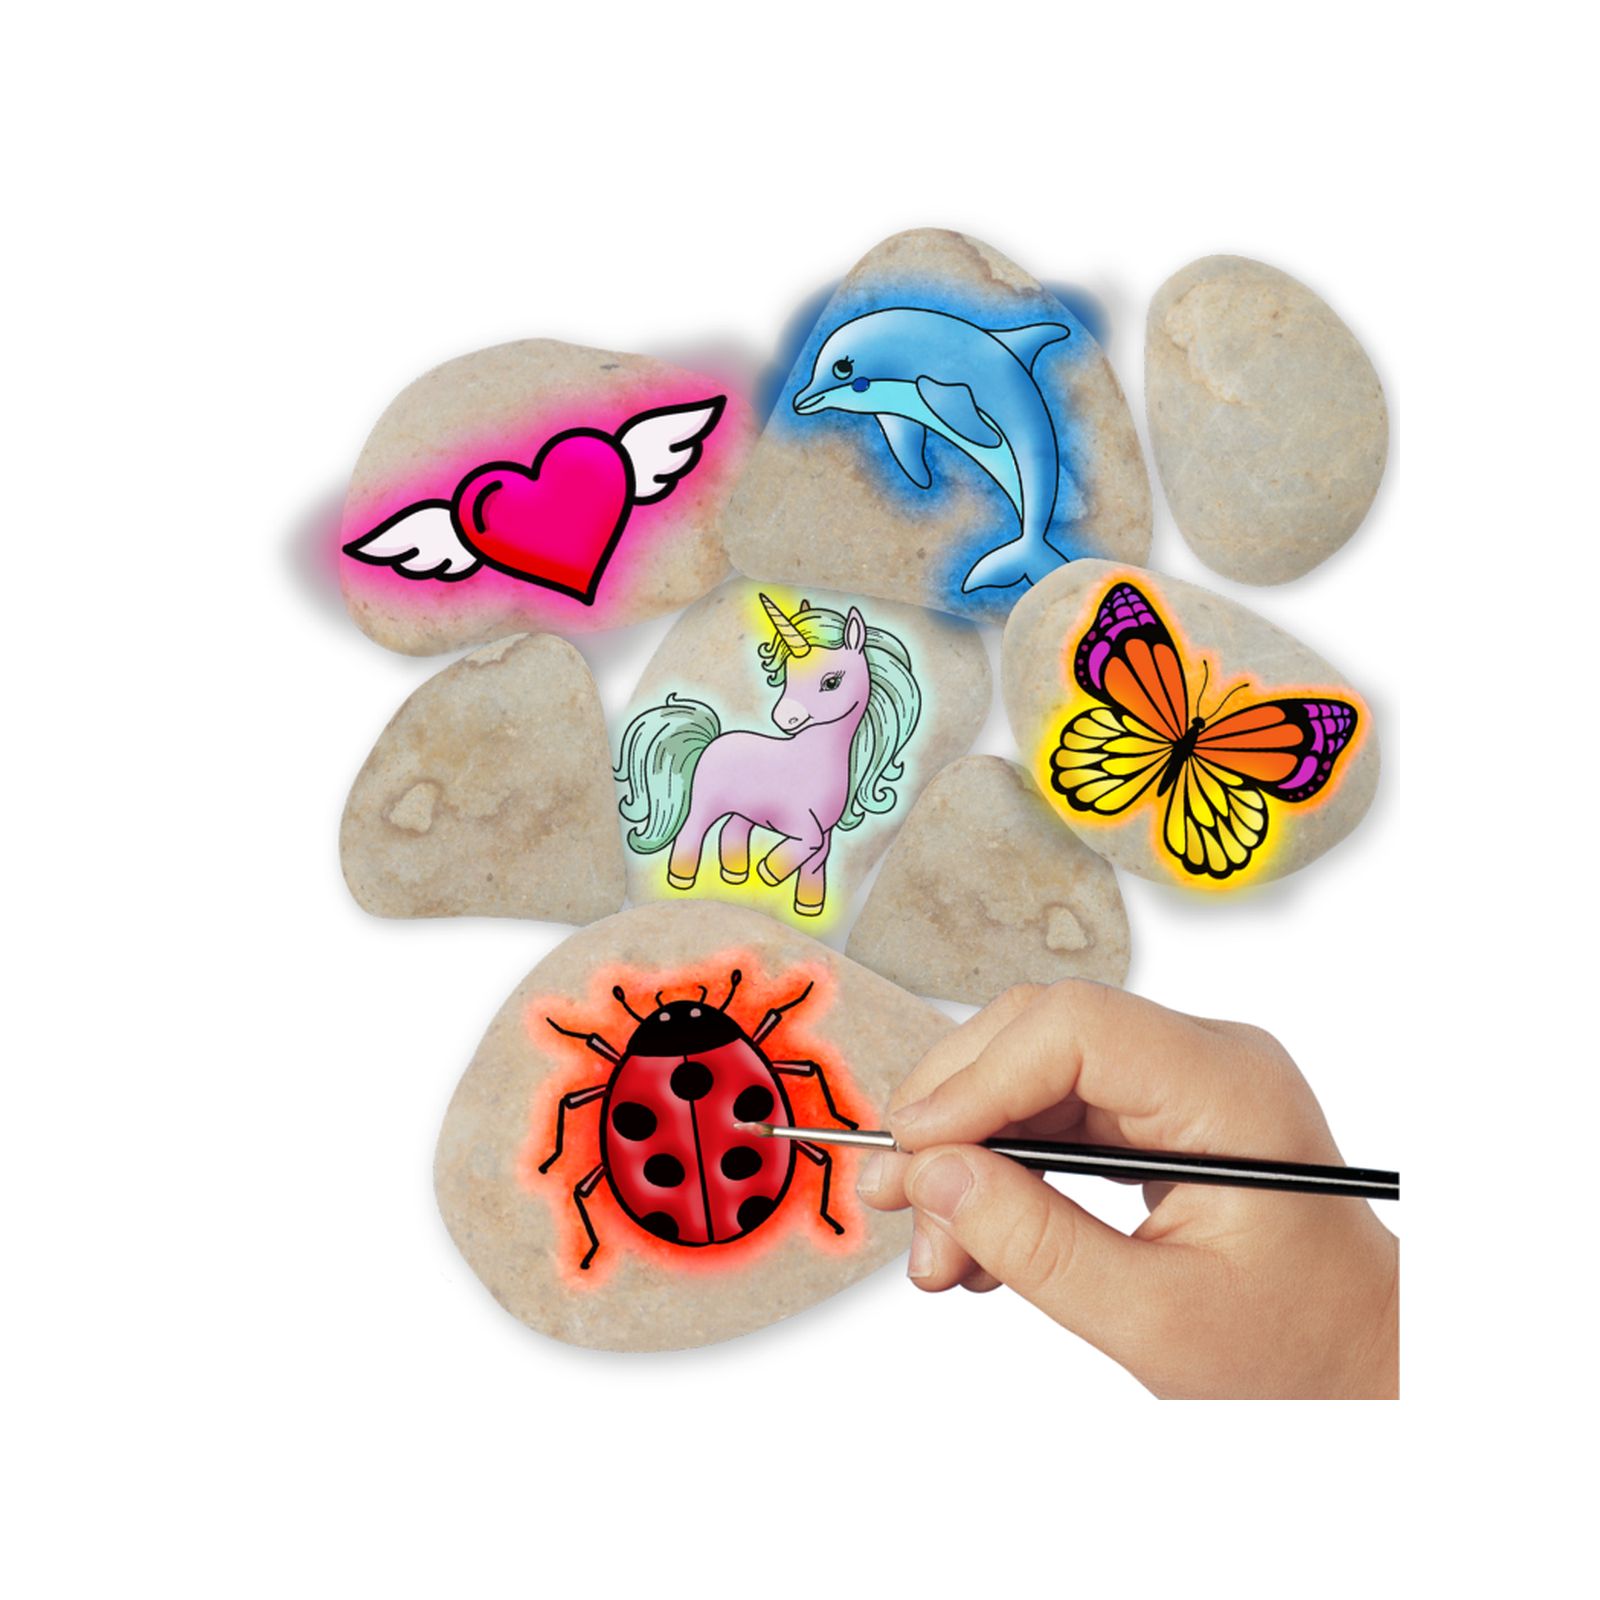 Kit Di Pittura Rock Creatività Illuminata Al Buio Per Bambini : Artigianato  Per Bambini Di Età Compresa Tra 4-8 Anni, Pittura Di Rocce E Artigianato,  Regalo Per Bambini (colore Componente Casuale)